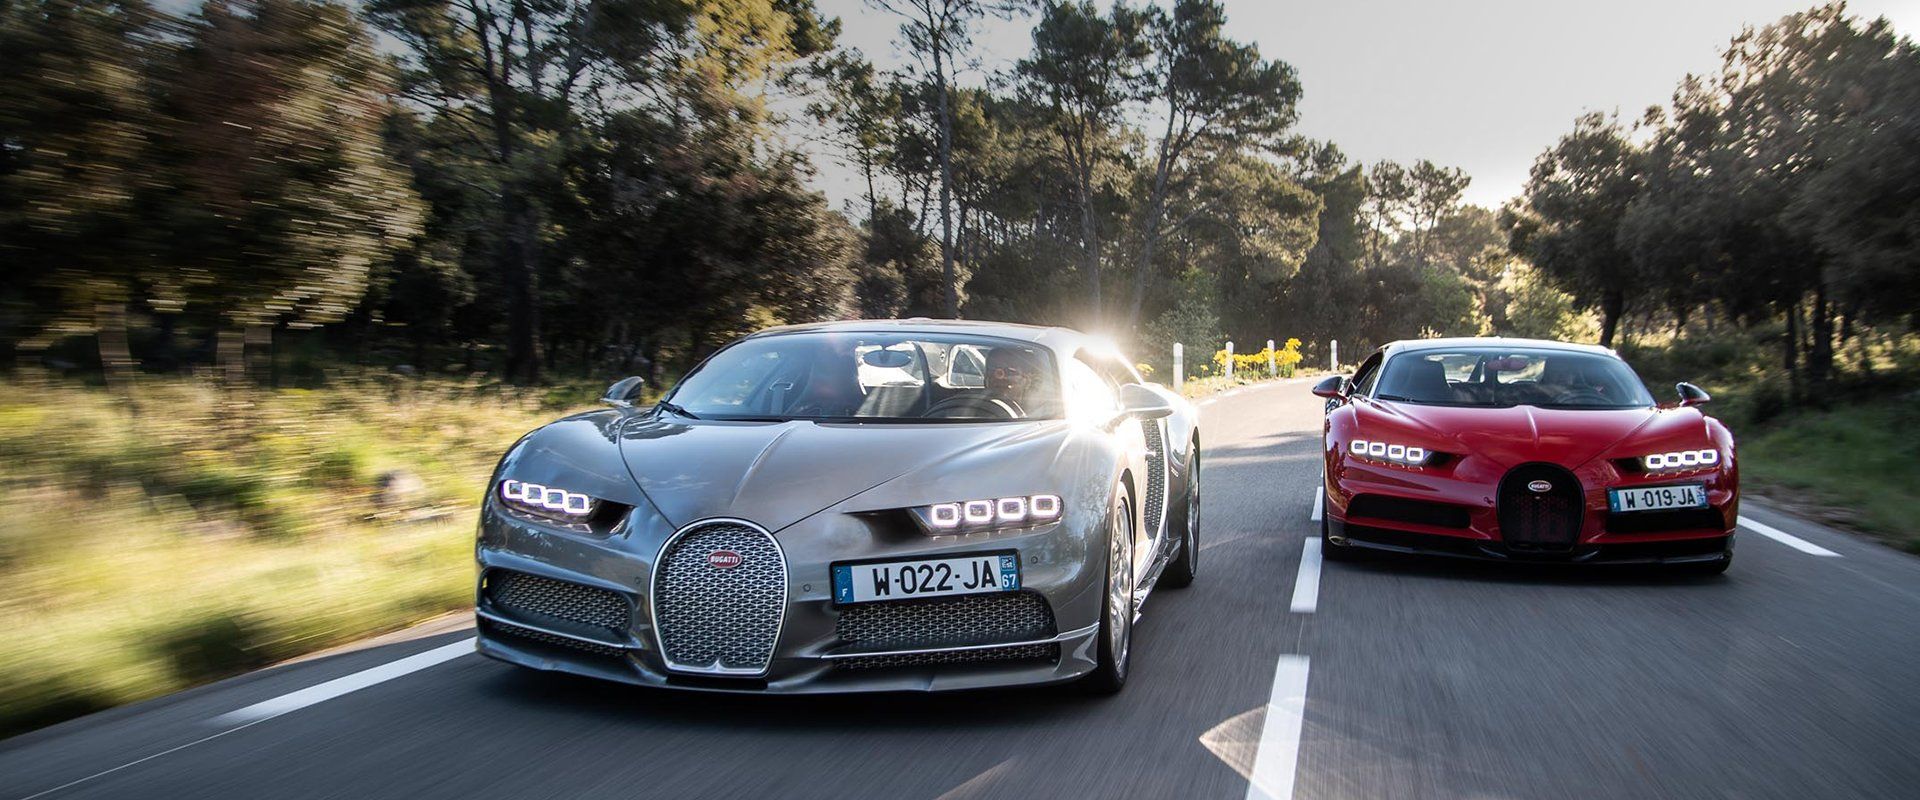 Bugatti Chiron and Shiron Super Sport